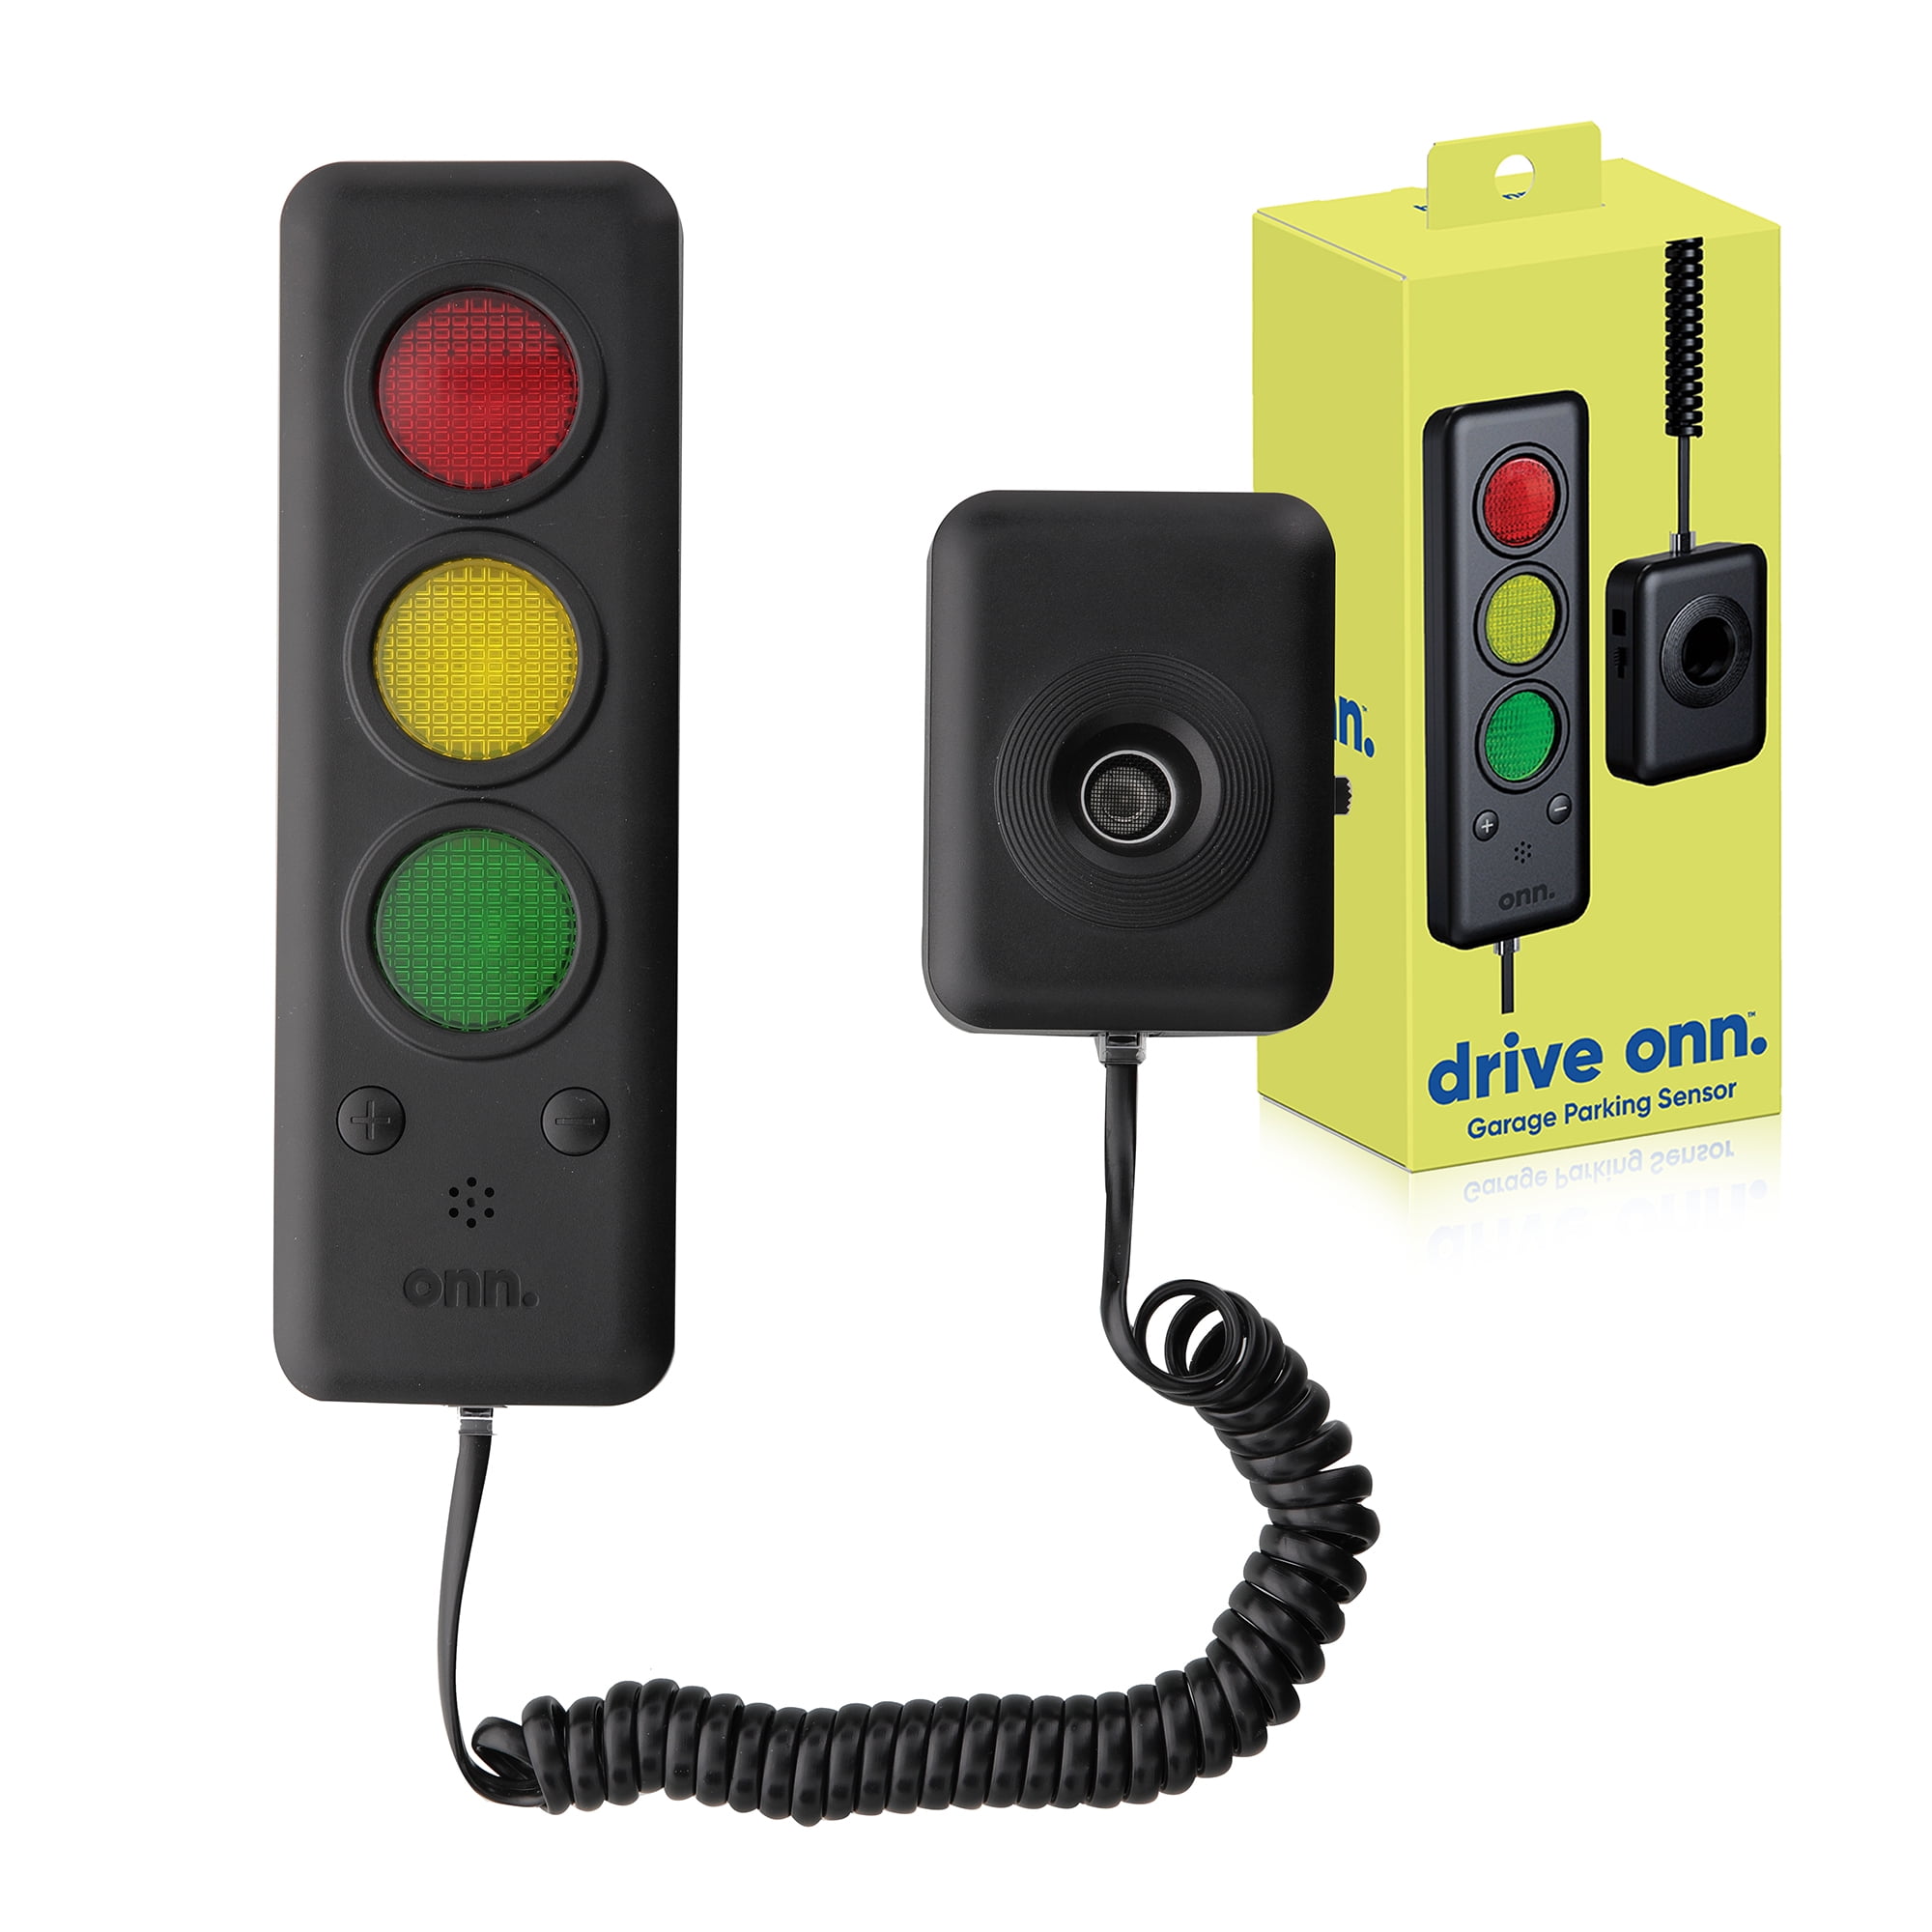 Buy online myTVS TPS-38 Voice Assist Parking Sensor, Black at